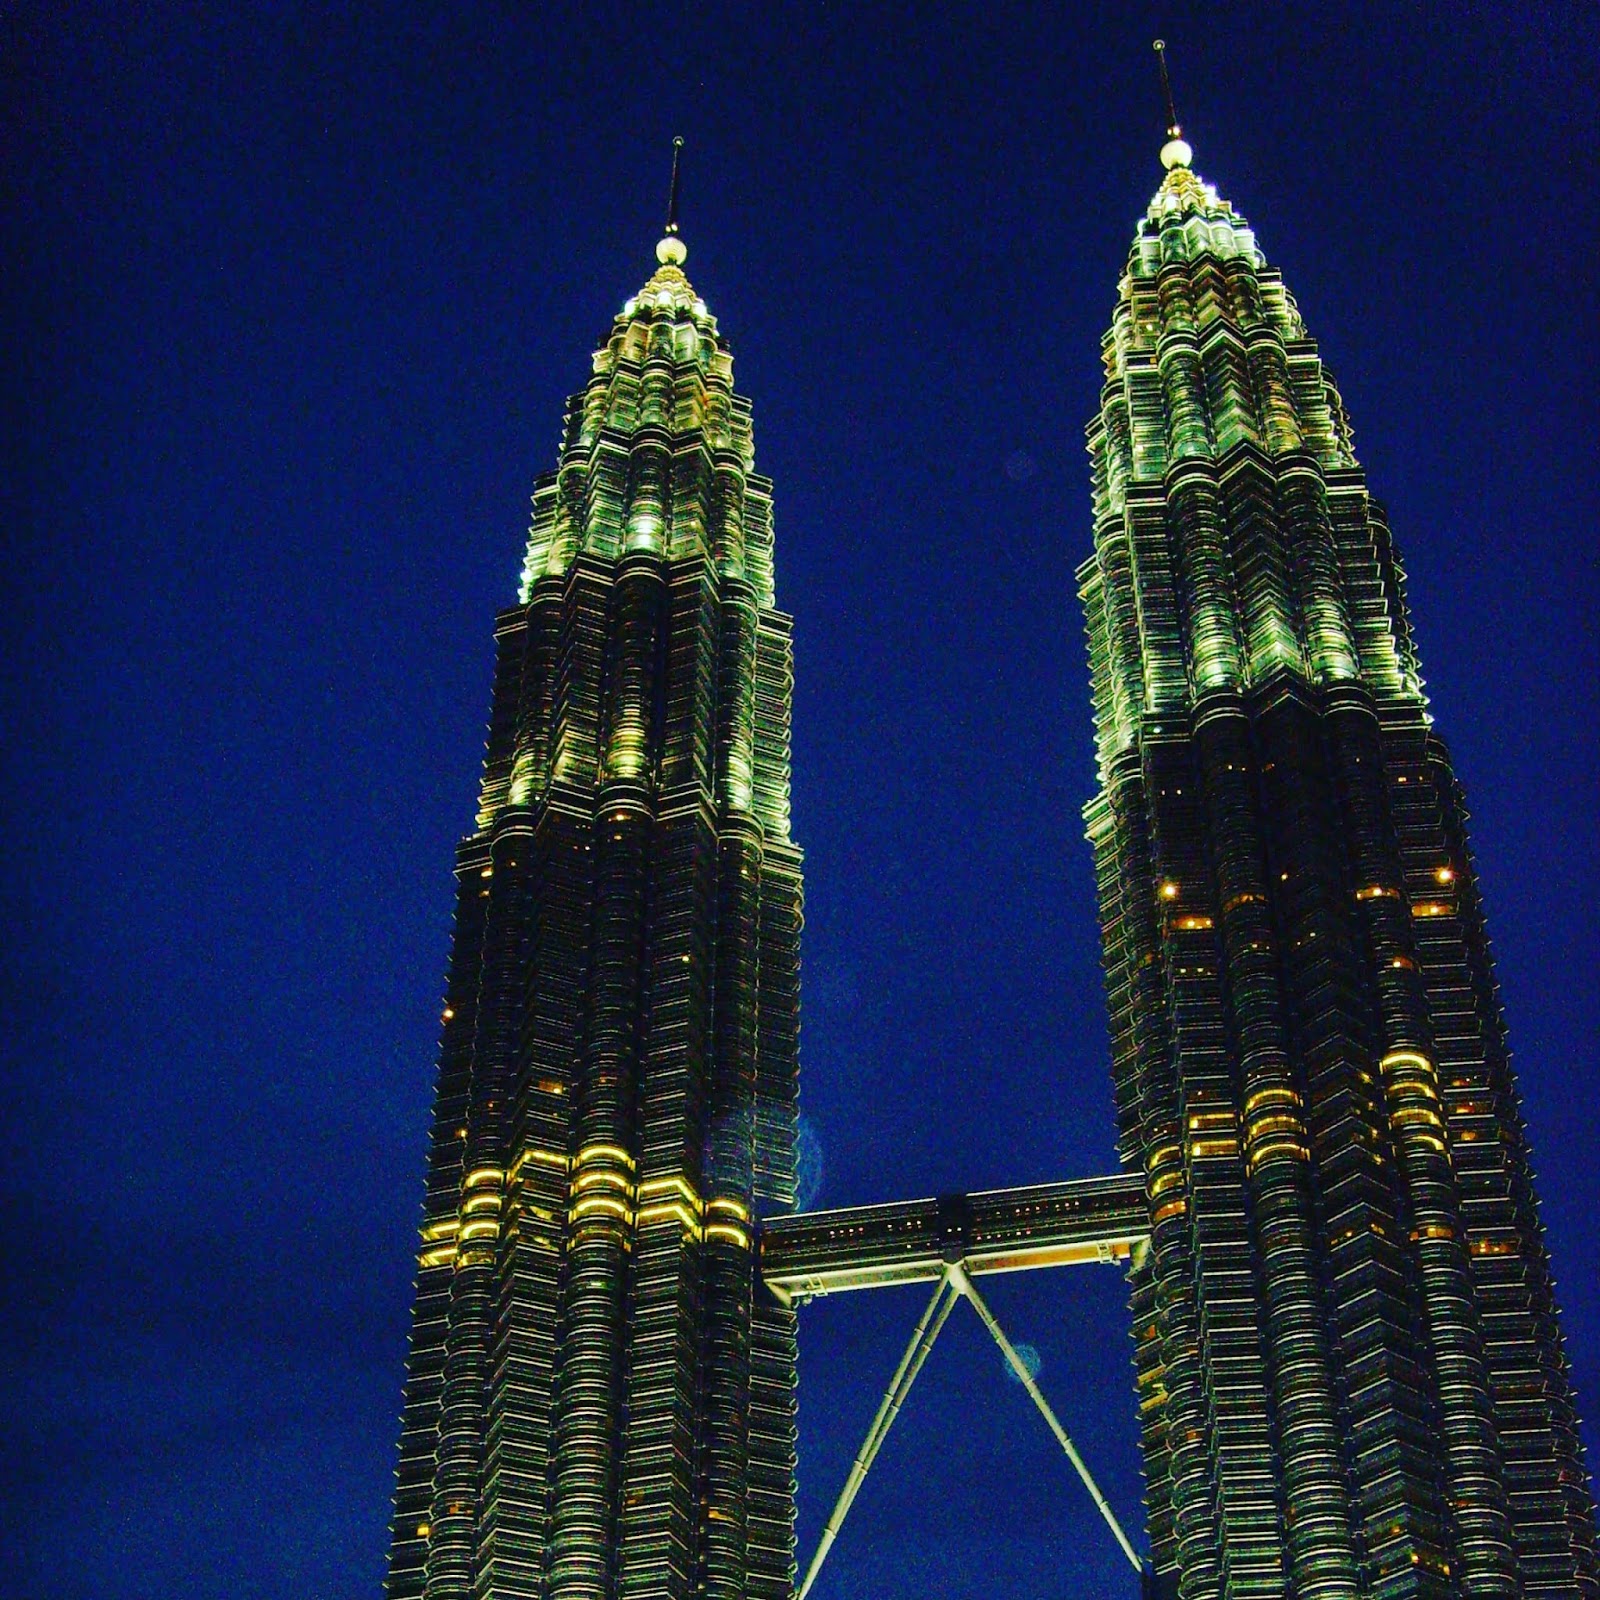 petronas towers at night